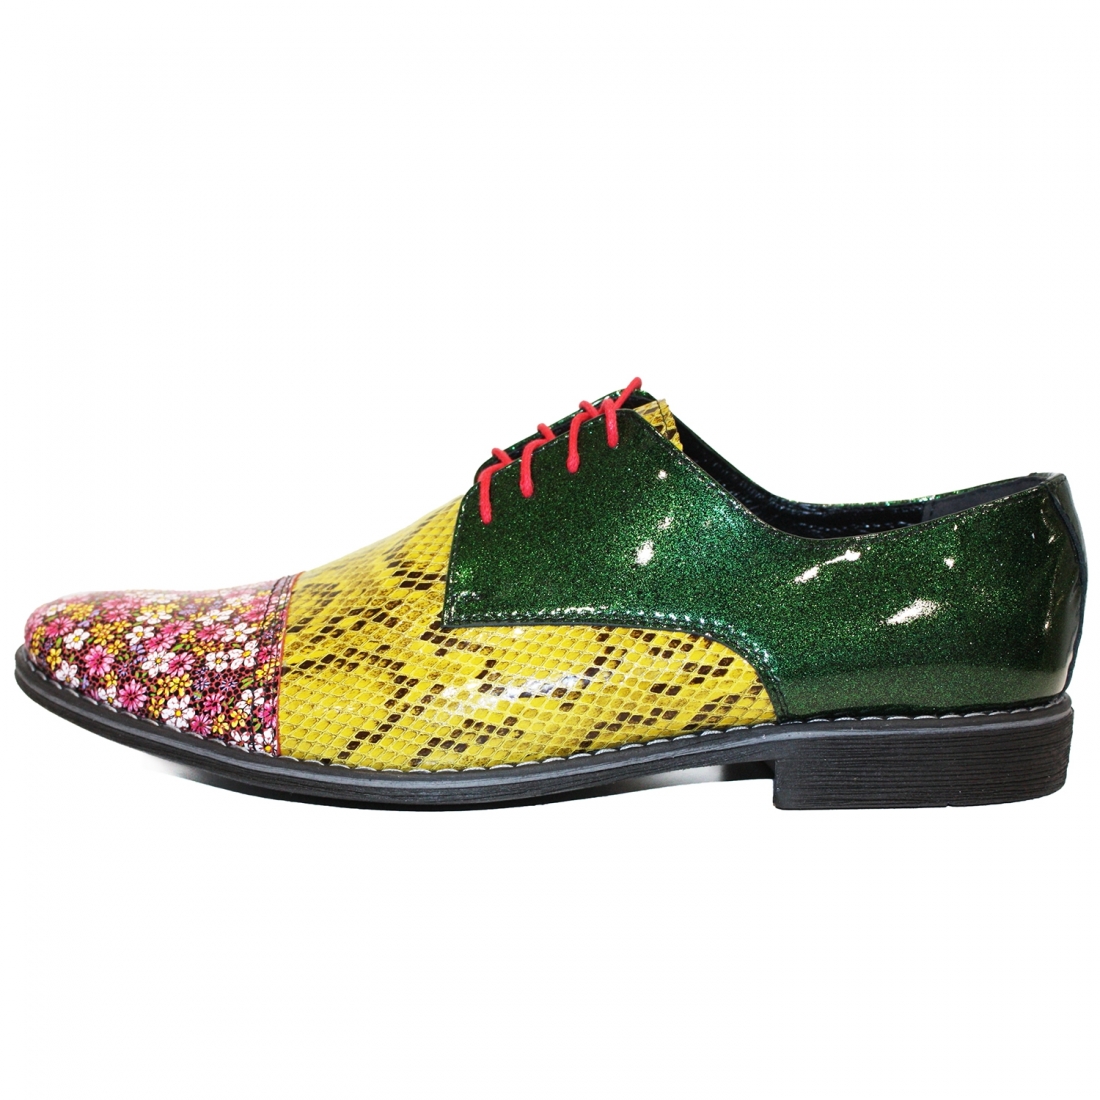 Modello Mixare - Scarpe Classiche - Handmade Colorful Italian Leather Shoes